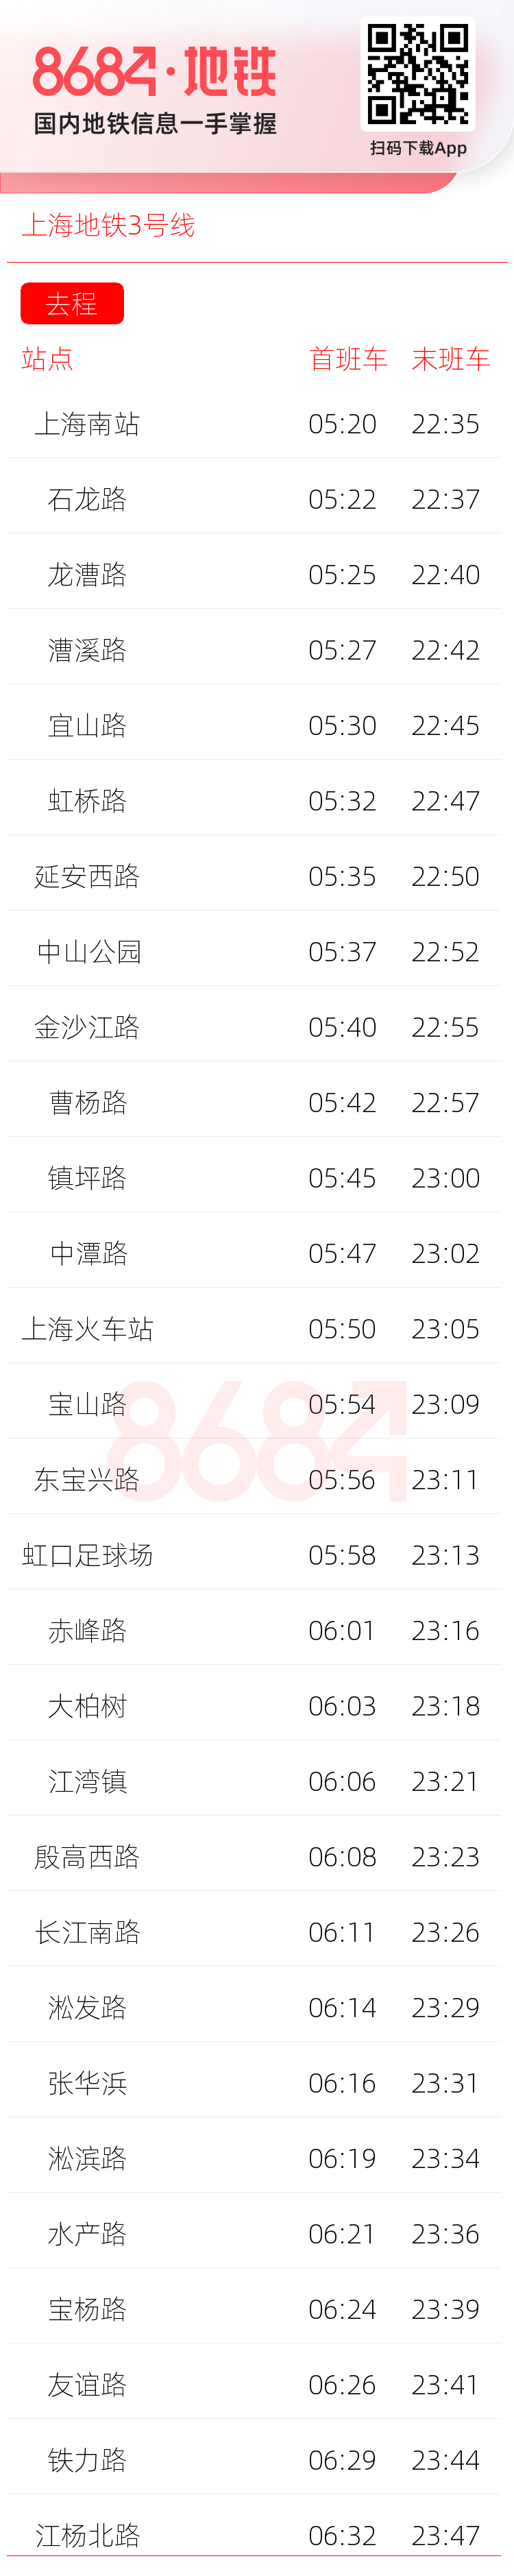 上海地铁3号线运营时间表